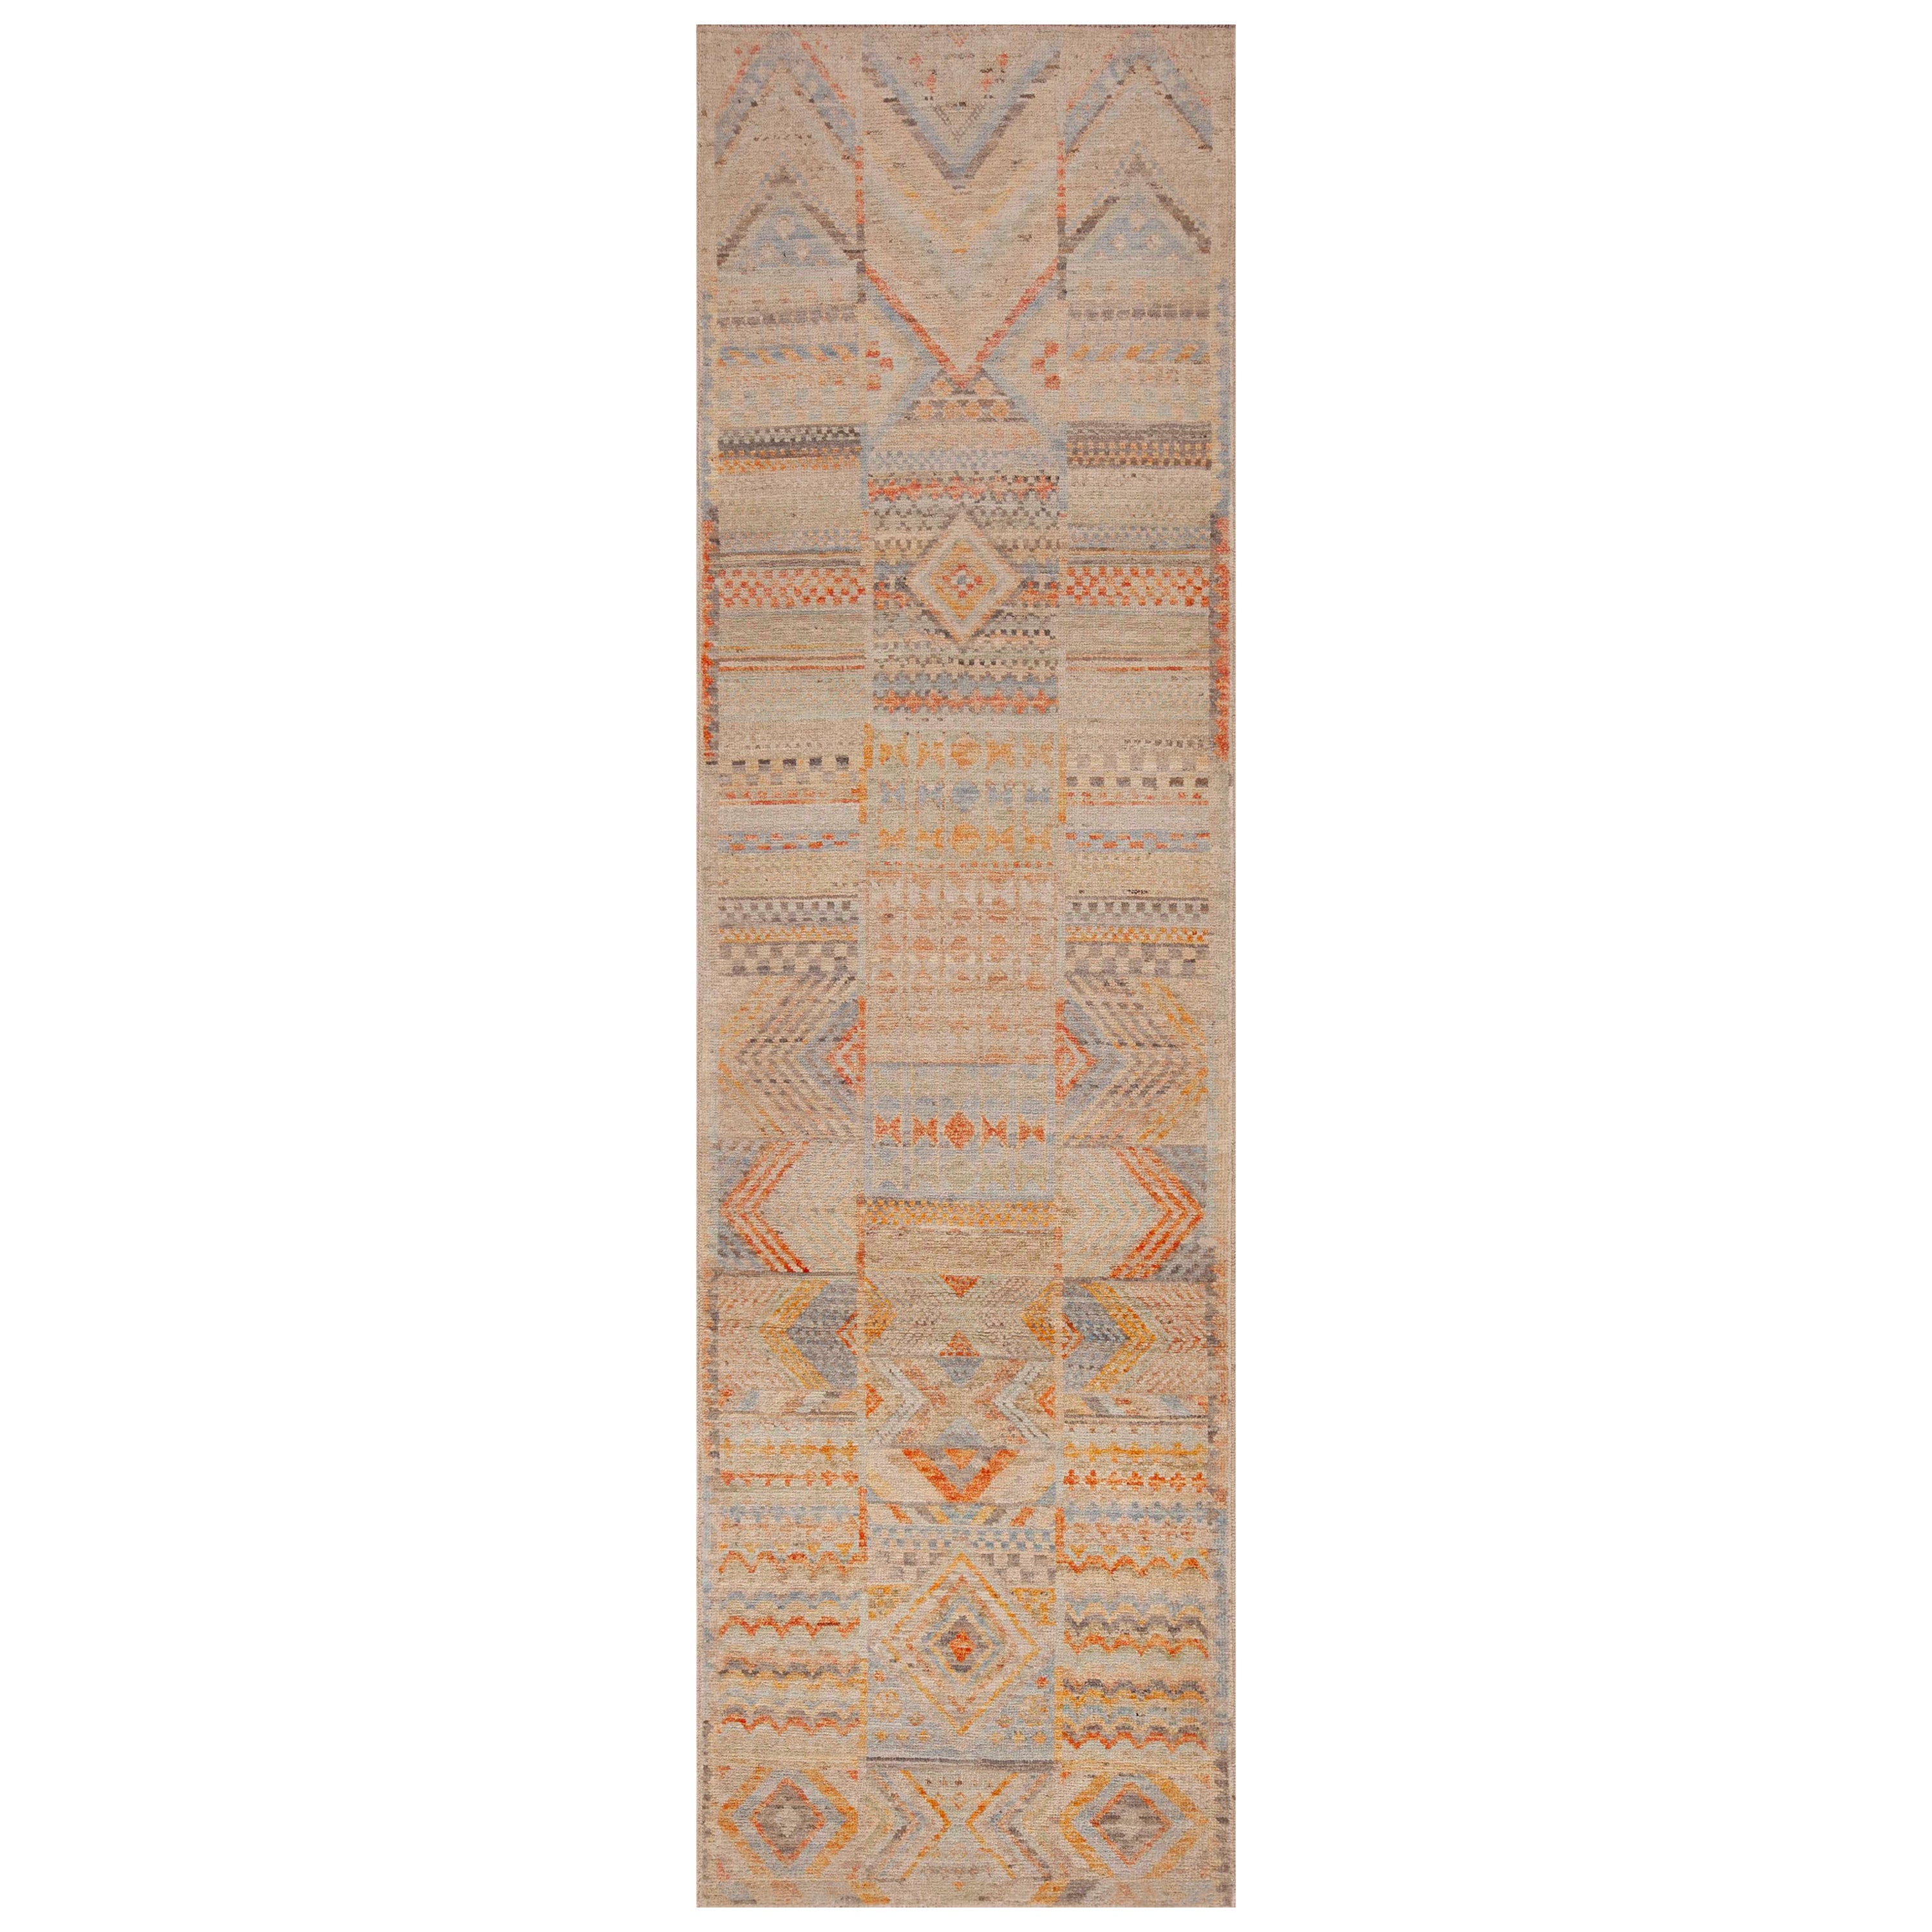 Tapis de couloir Tribal Géométrique Modernity de Nazmiyal Collection 2'9" x 9'7"